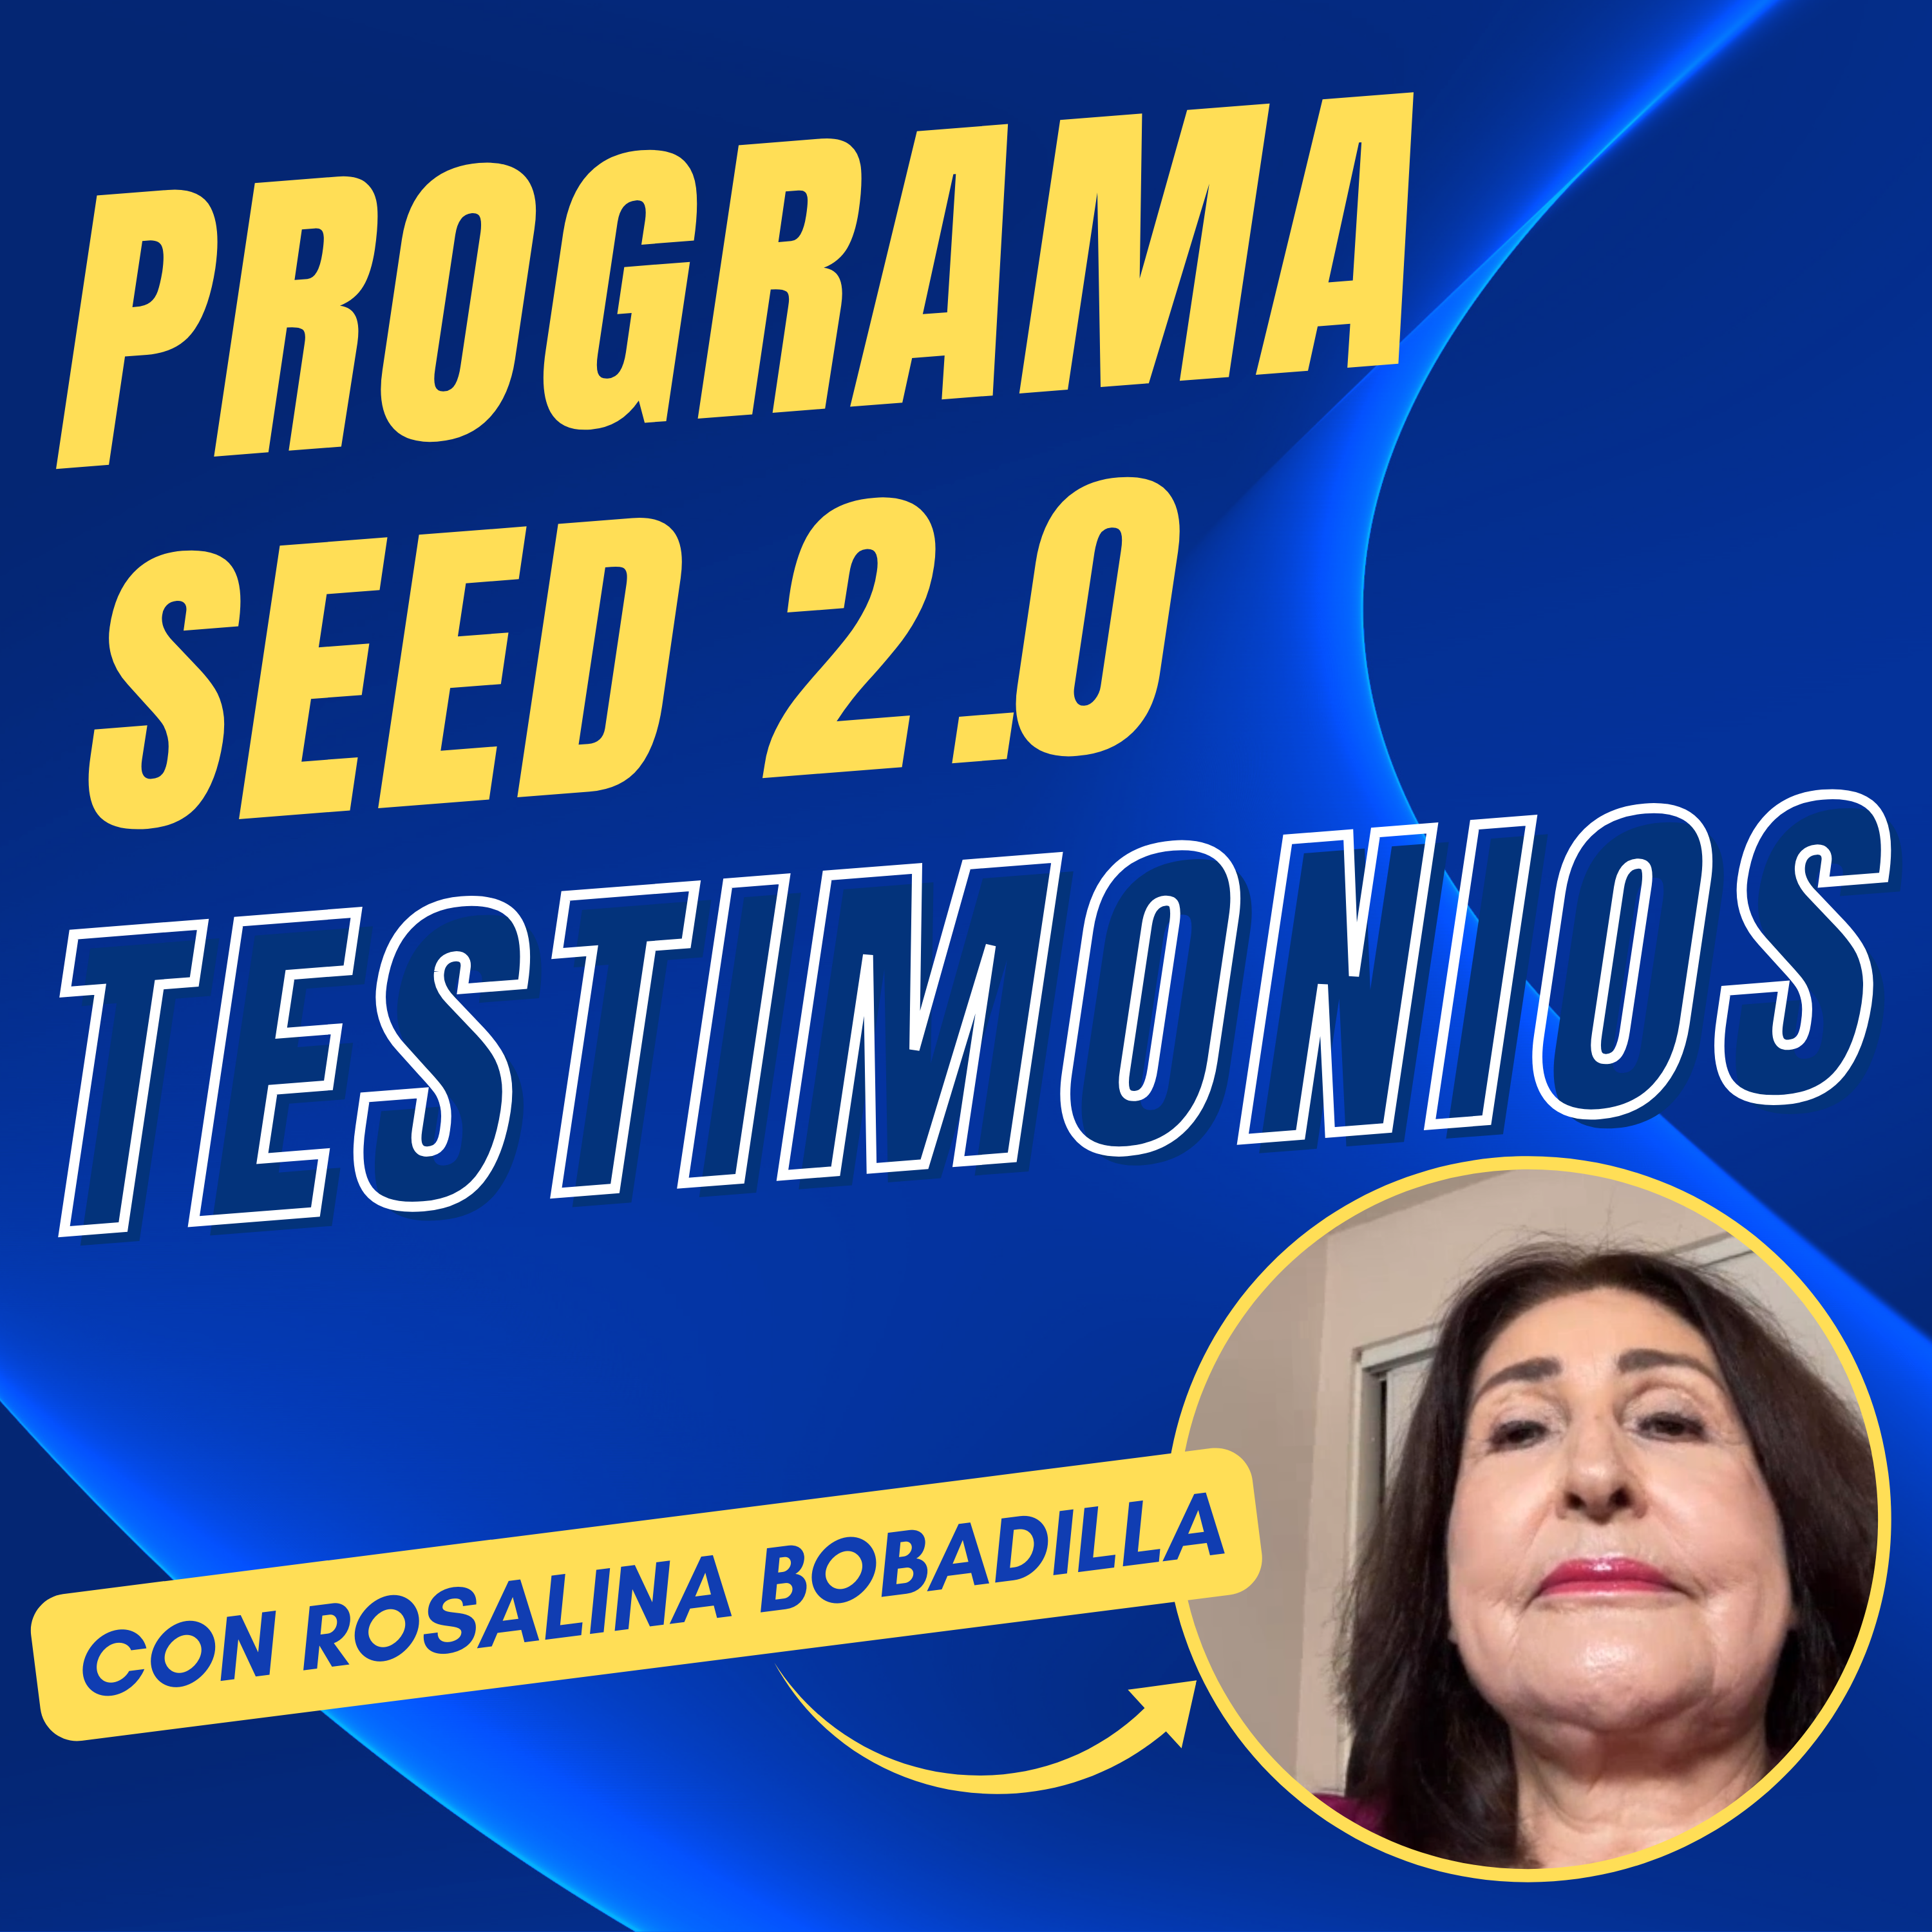 Testimonio de Rosalina Bobadilla sobre el programa SEED 2.0